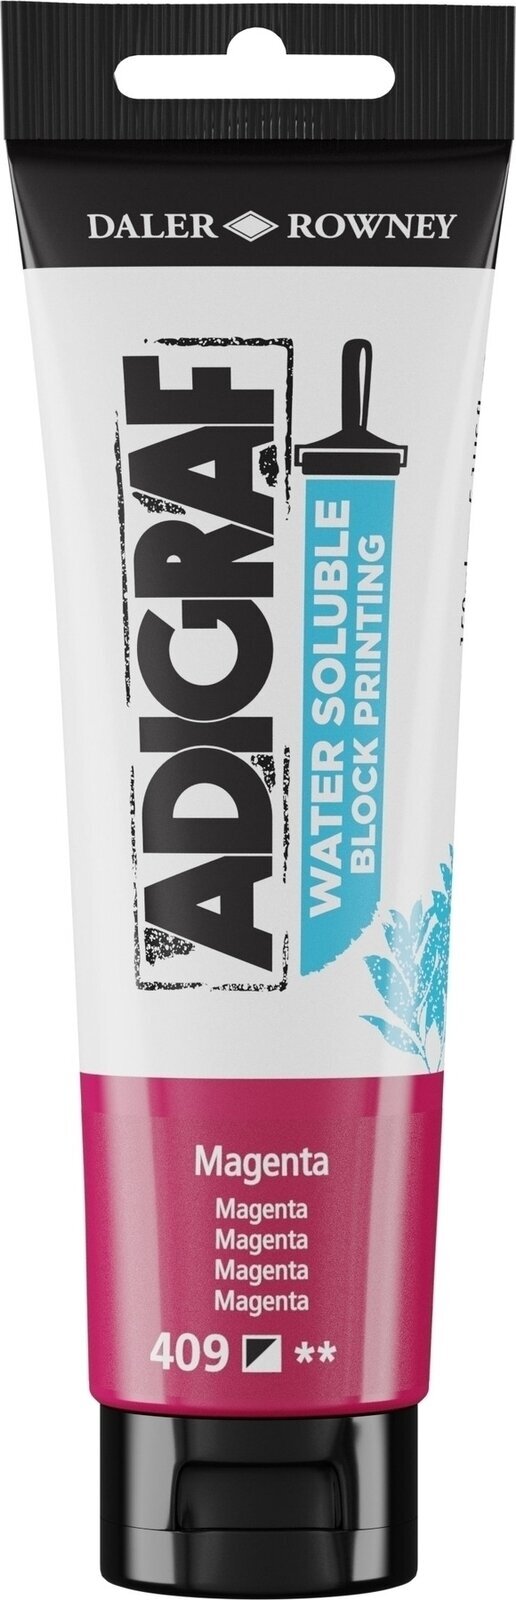 Verf voor linosnede Daler Rowney Adigraf Block Printing Water Soluble Colour Verf voor linosnede Magenta 150 ml